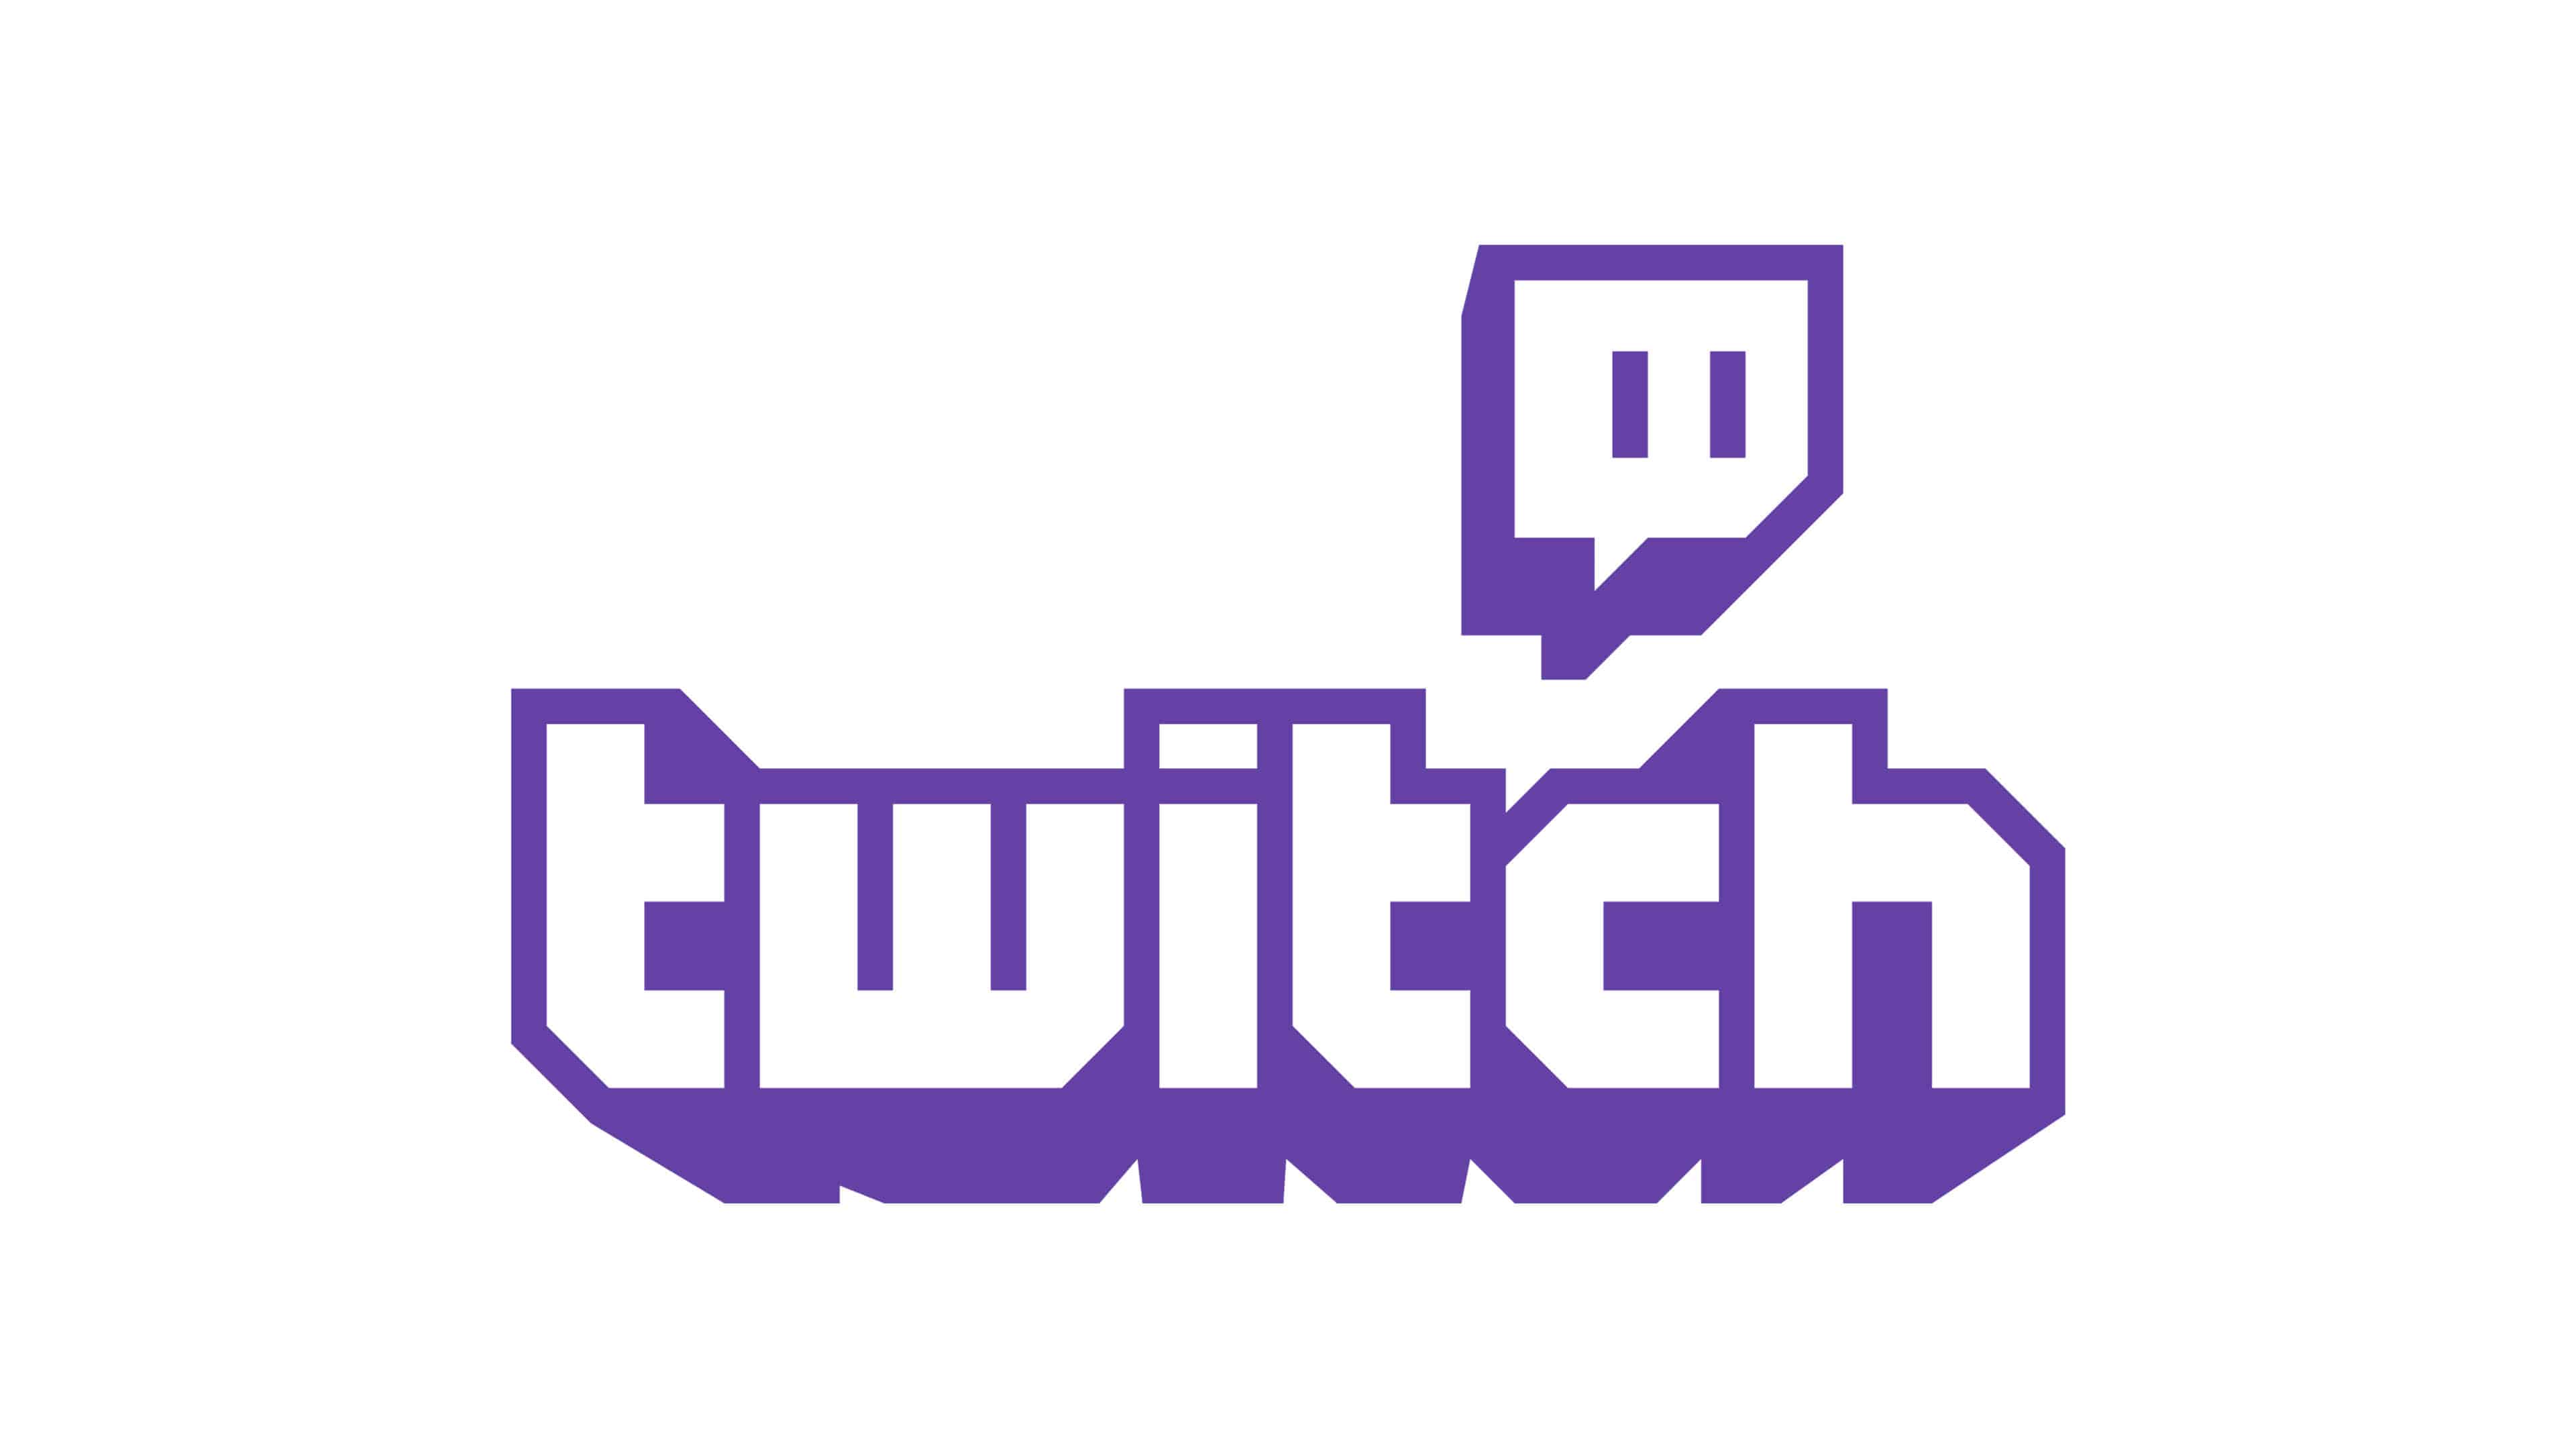 New Twitch Logo - Twitch Logo UHD 4K Wallpaper | Pixelz